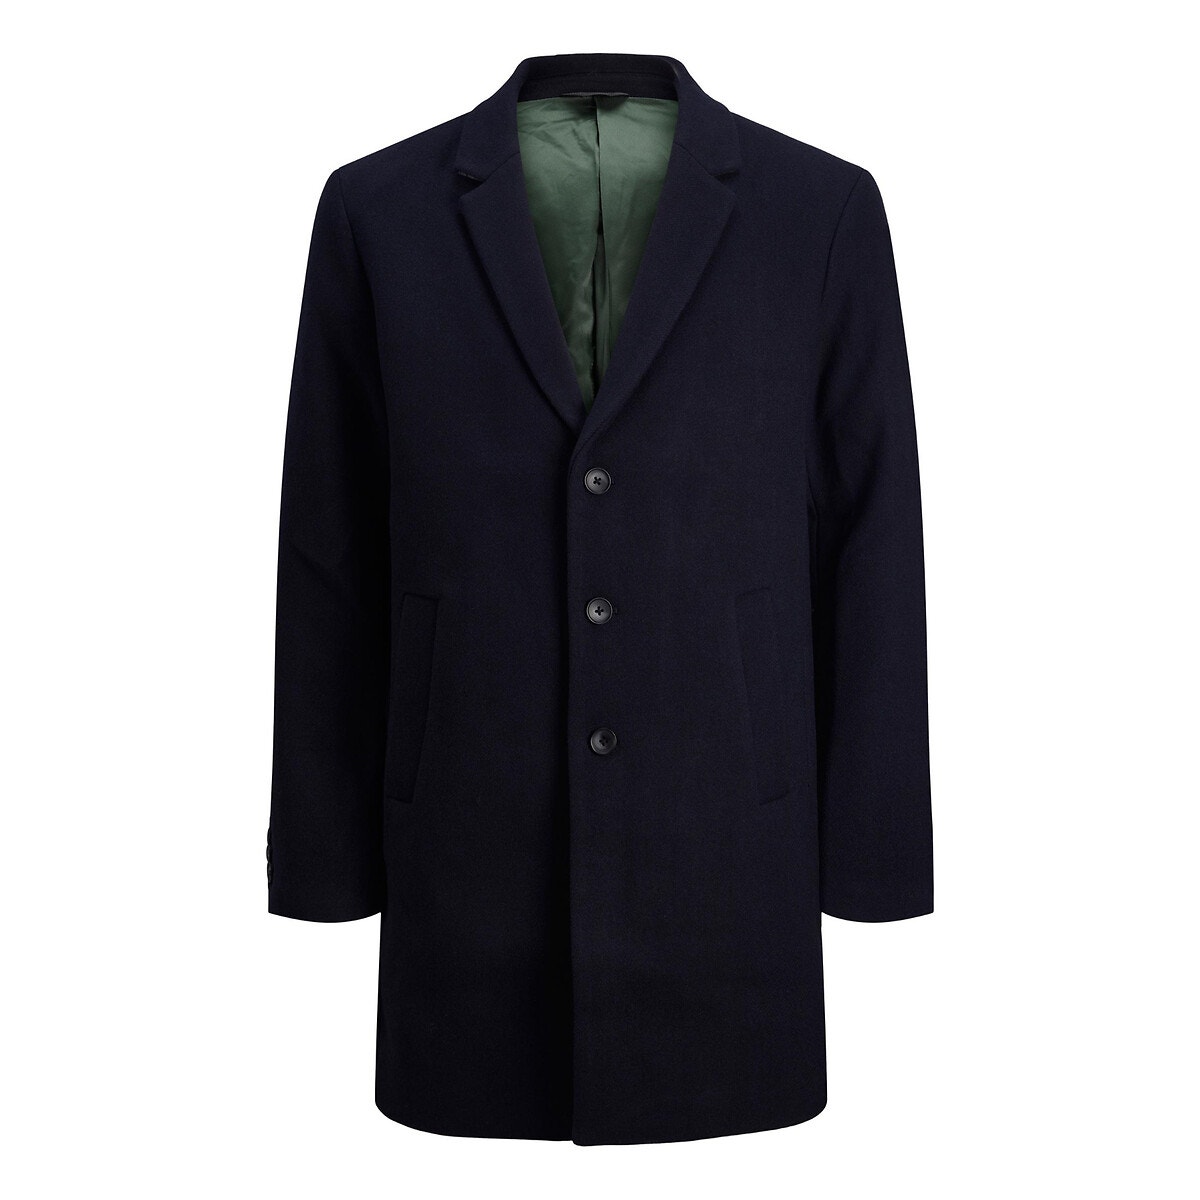 Μακρύ παλτό με κουμπιά, Moulder Wool